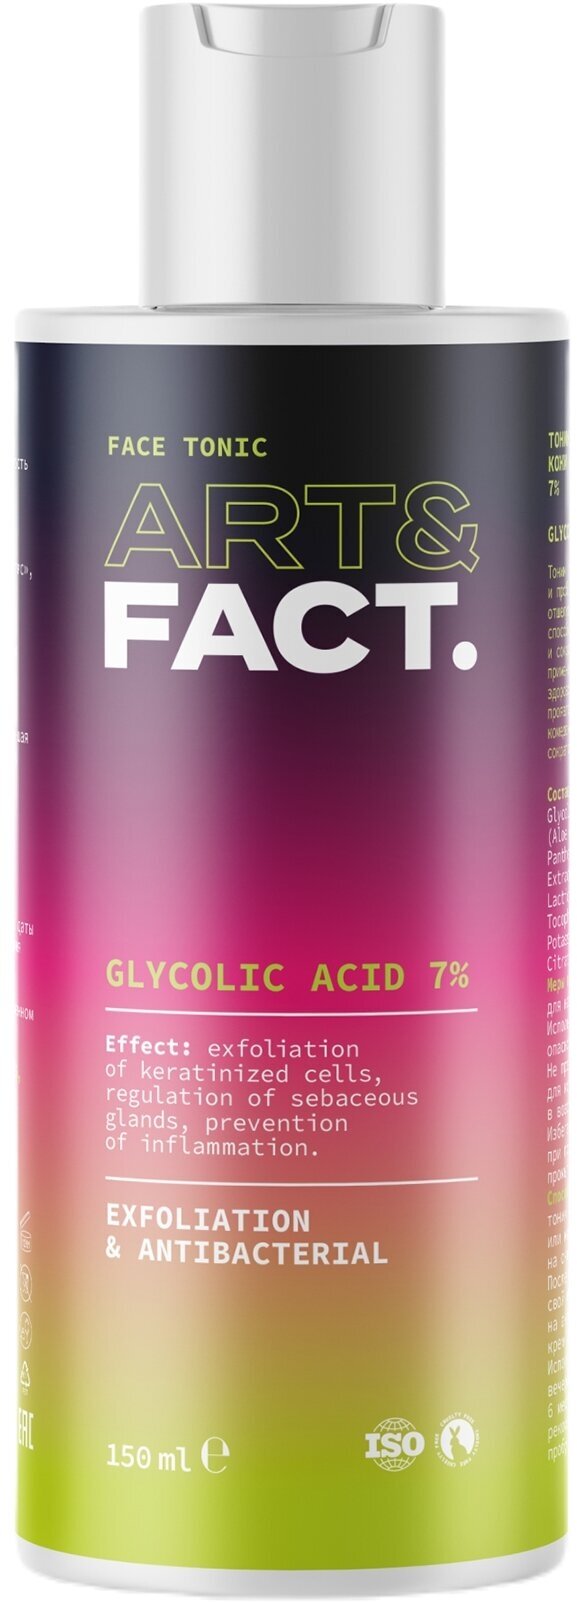 ART&FACT. Тоник-эксфолиант для жирной кожи с гликолевой кислотой 7 %, 150 мл